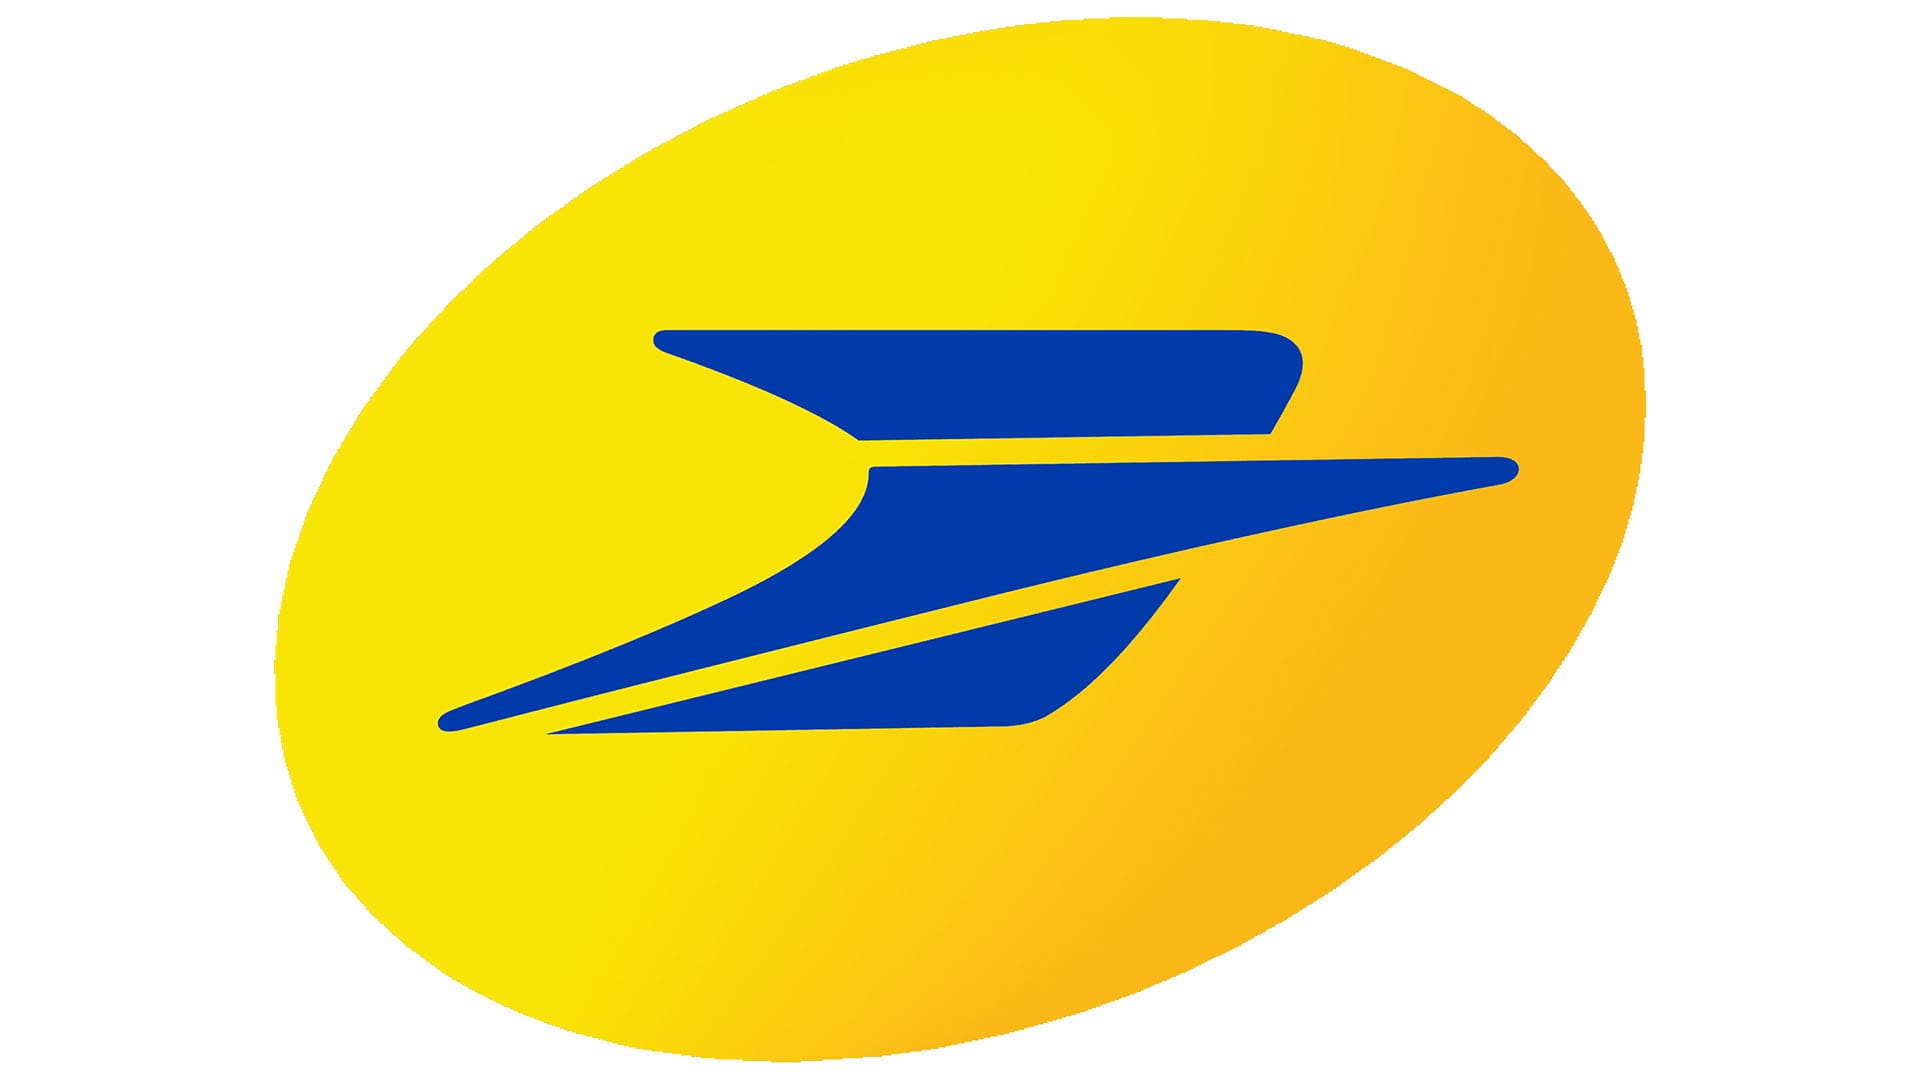 Logo La Poste : décryptage de son histoire et son oiseau symbolique